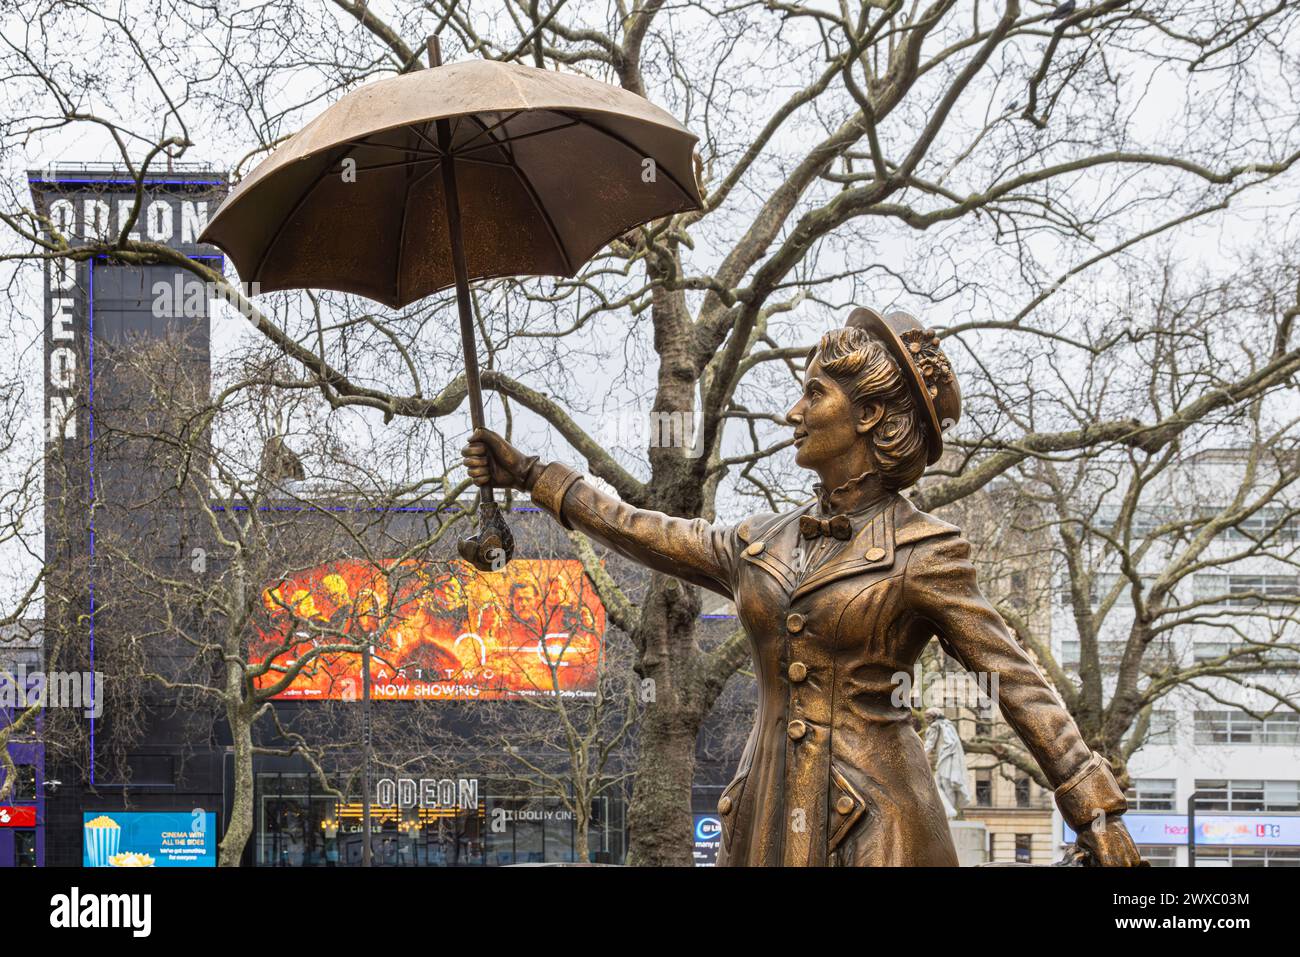 Statue en bronze de Mary Poppins sur les scènes de The Square, Leicester Square. Abrite des cinémas d'importance nationale et accueille de nombreuses avant-premières de films. Banque D'Images